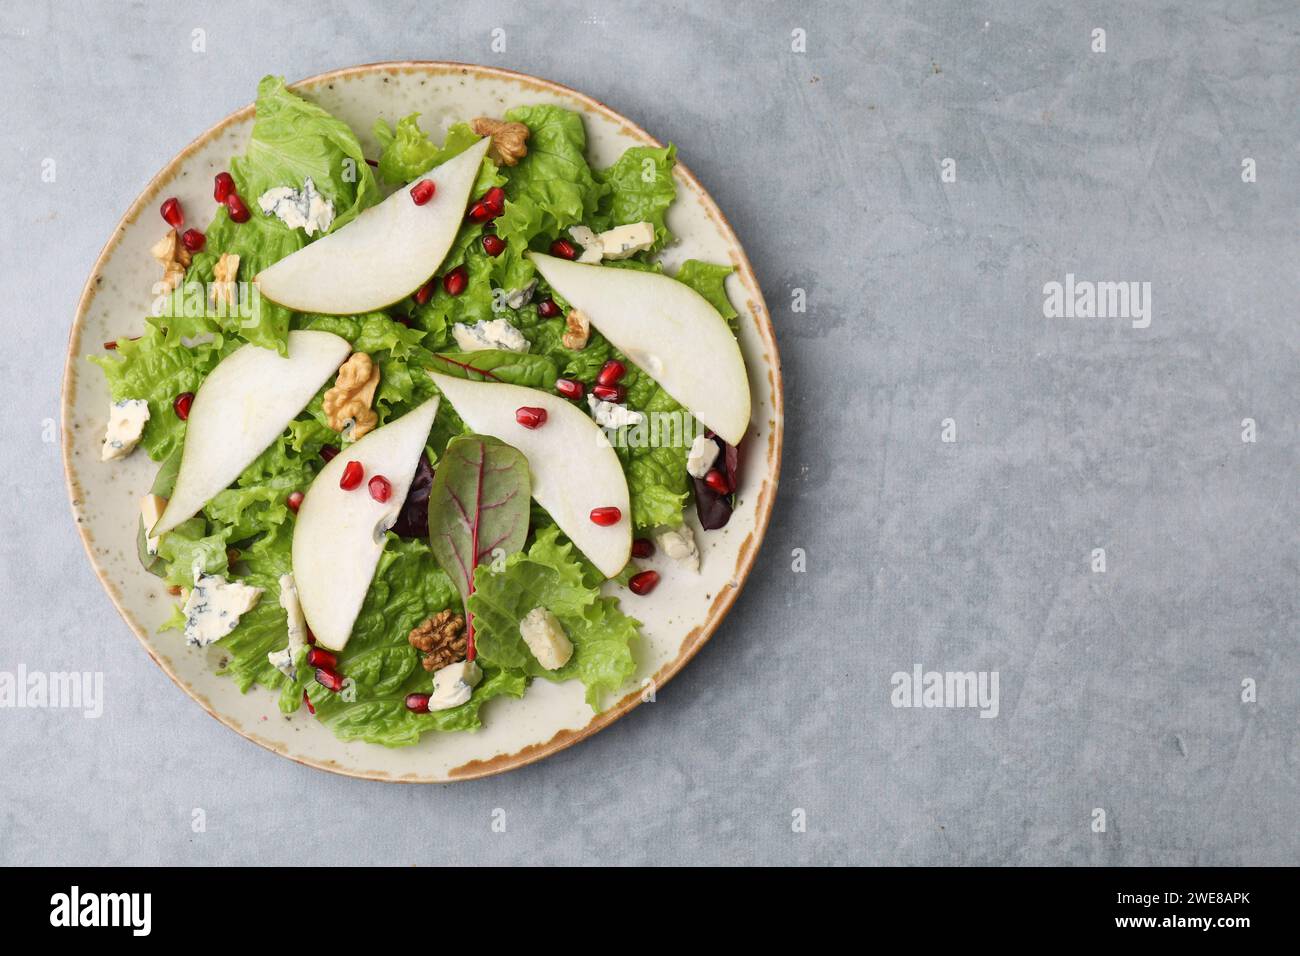 Assiette avec une délicieuse salade de poires sur une table texturée grise, vue de dessus. Espace pour le texte Banque D'Images